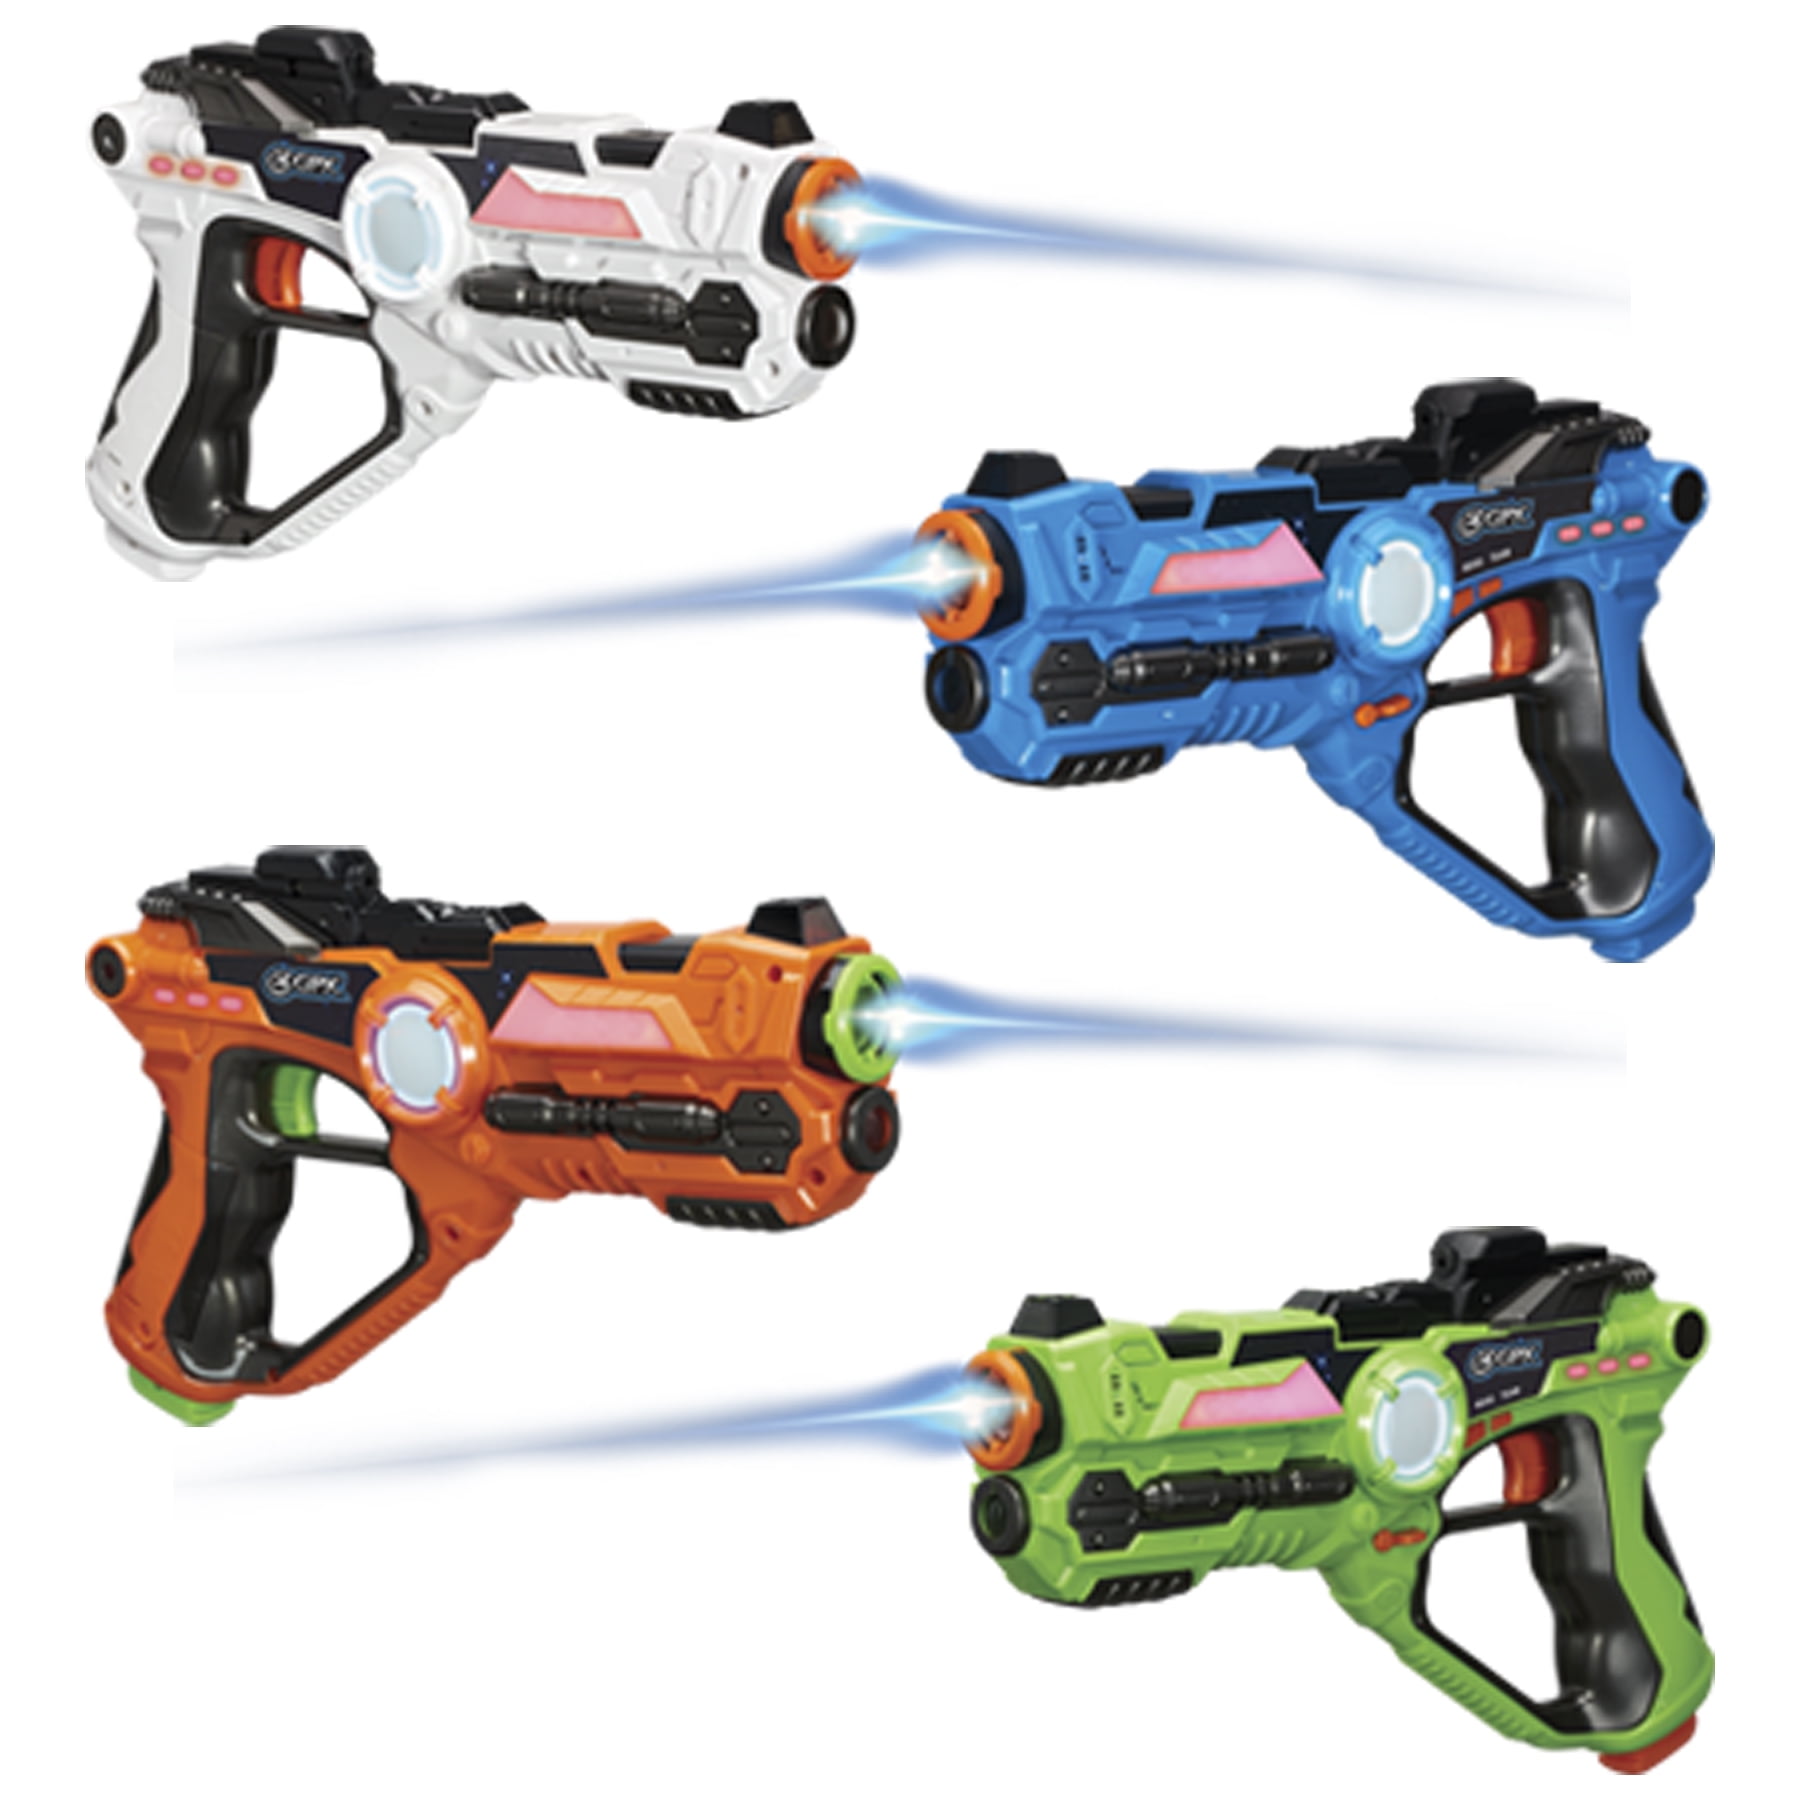 Laser Tag Double Set Lazer Blaster Kids Fun 2 Player Interactive Gaming Toy Gun 